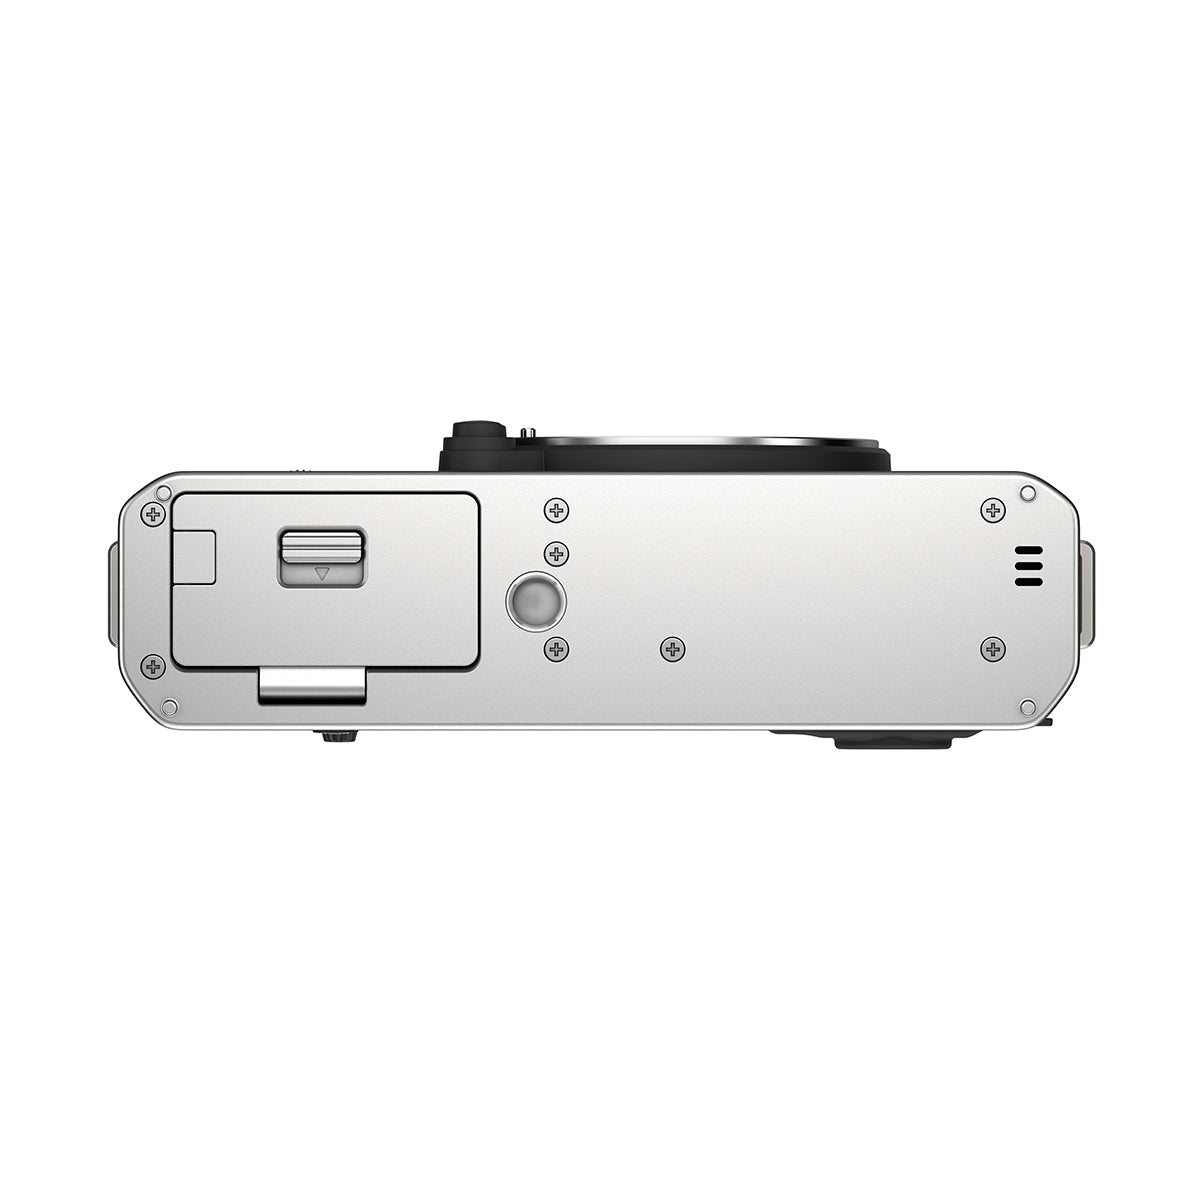 Fujifilm X-E4 Digital Camera Body (Silver)